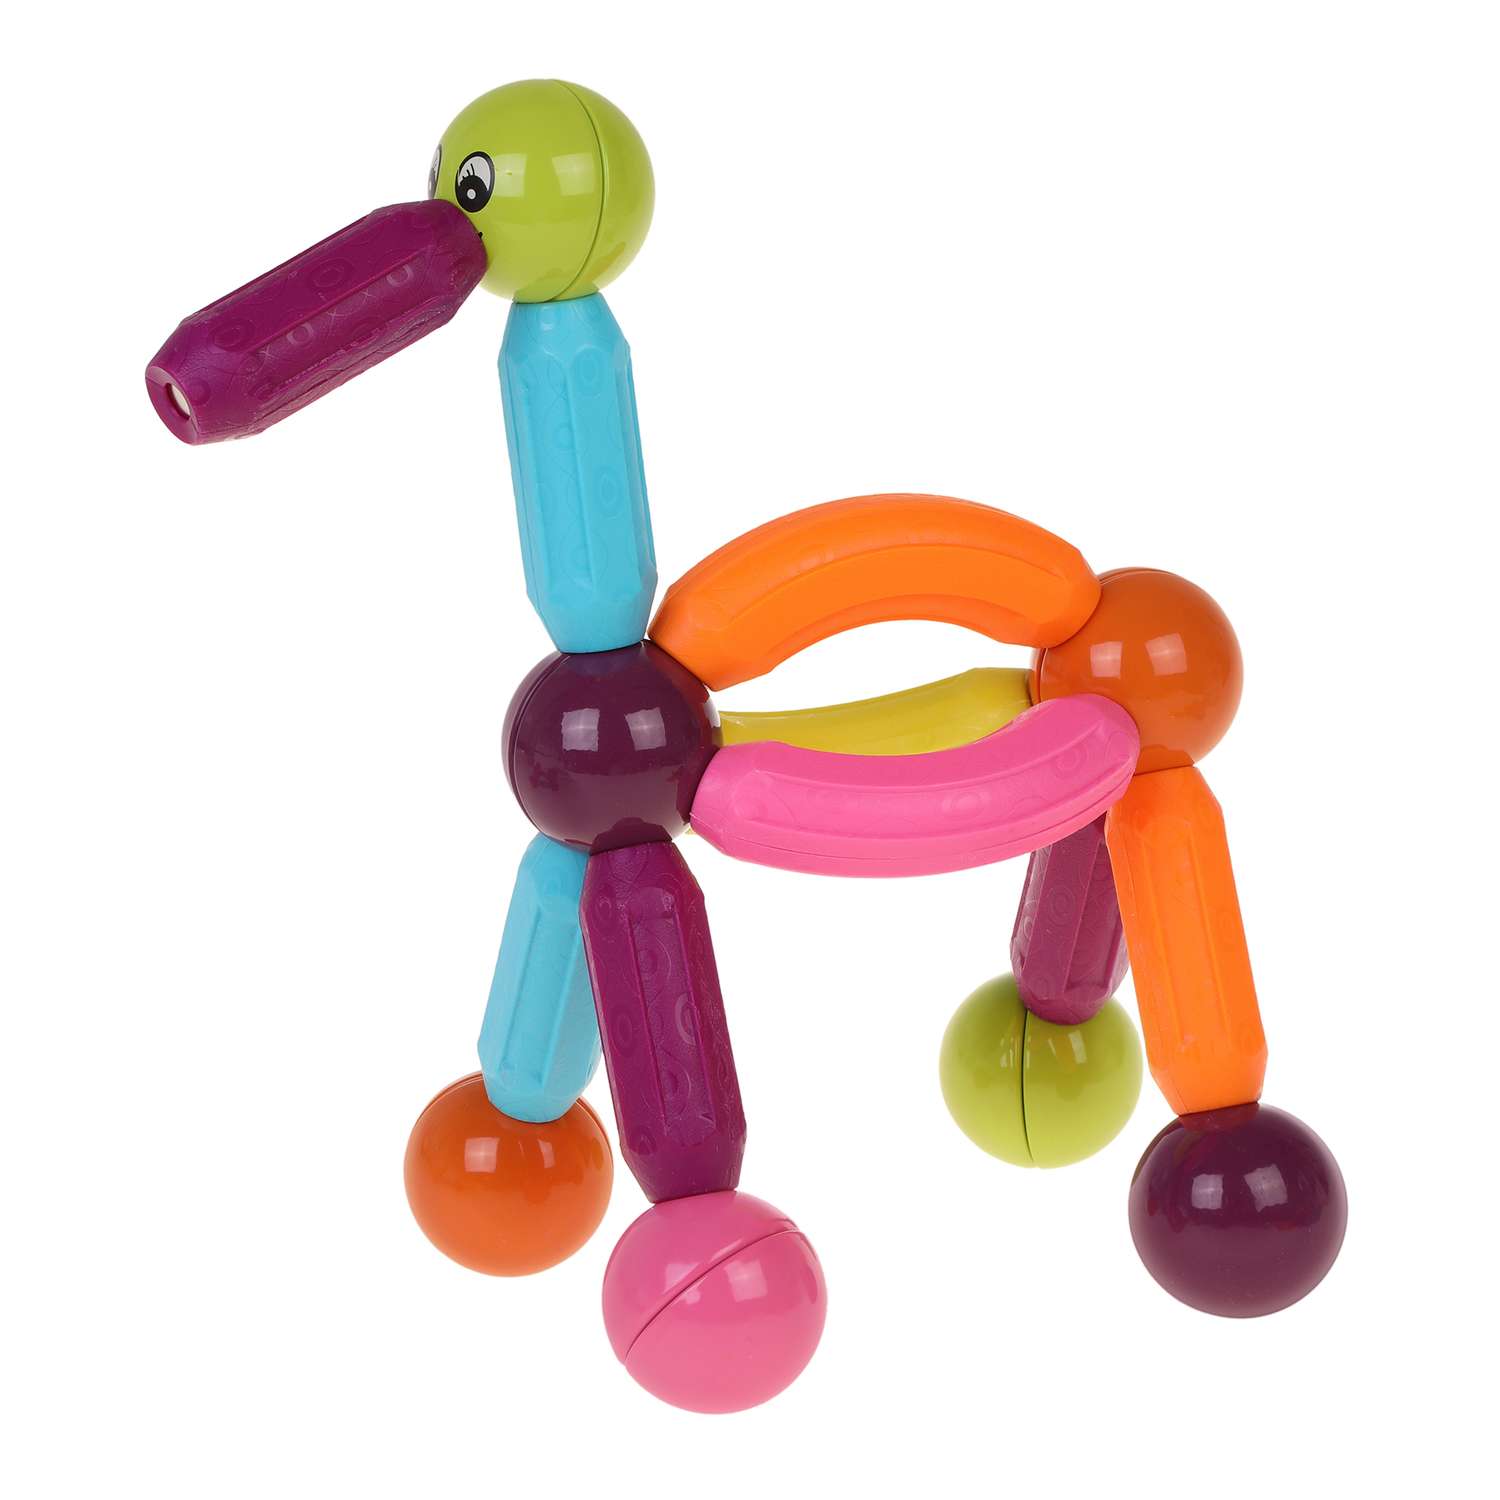 Магнитный конструктор детский Наша Игрушка для малышей магнитные шарики 32 детали - фото 1